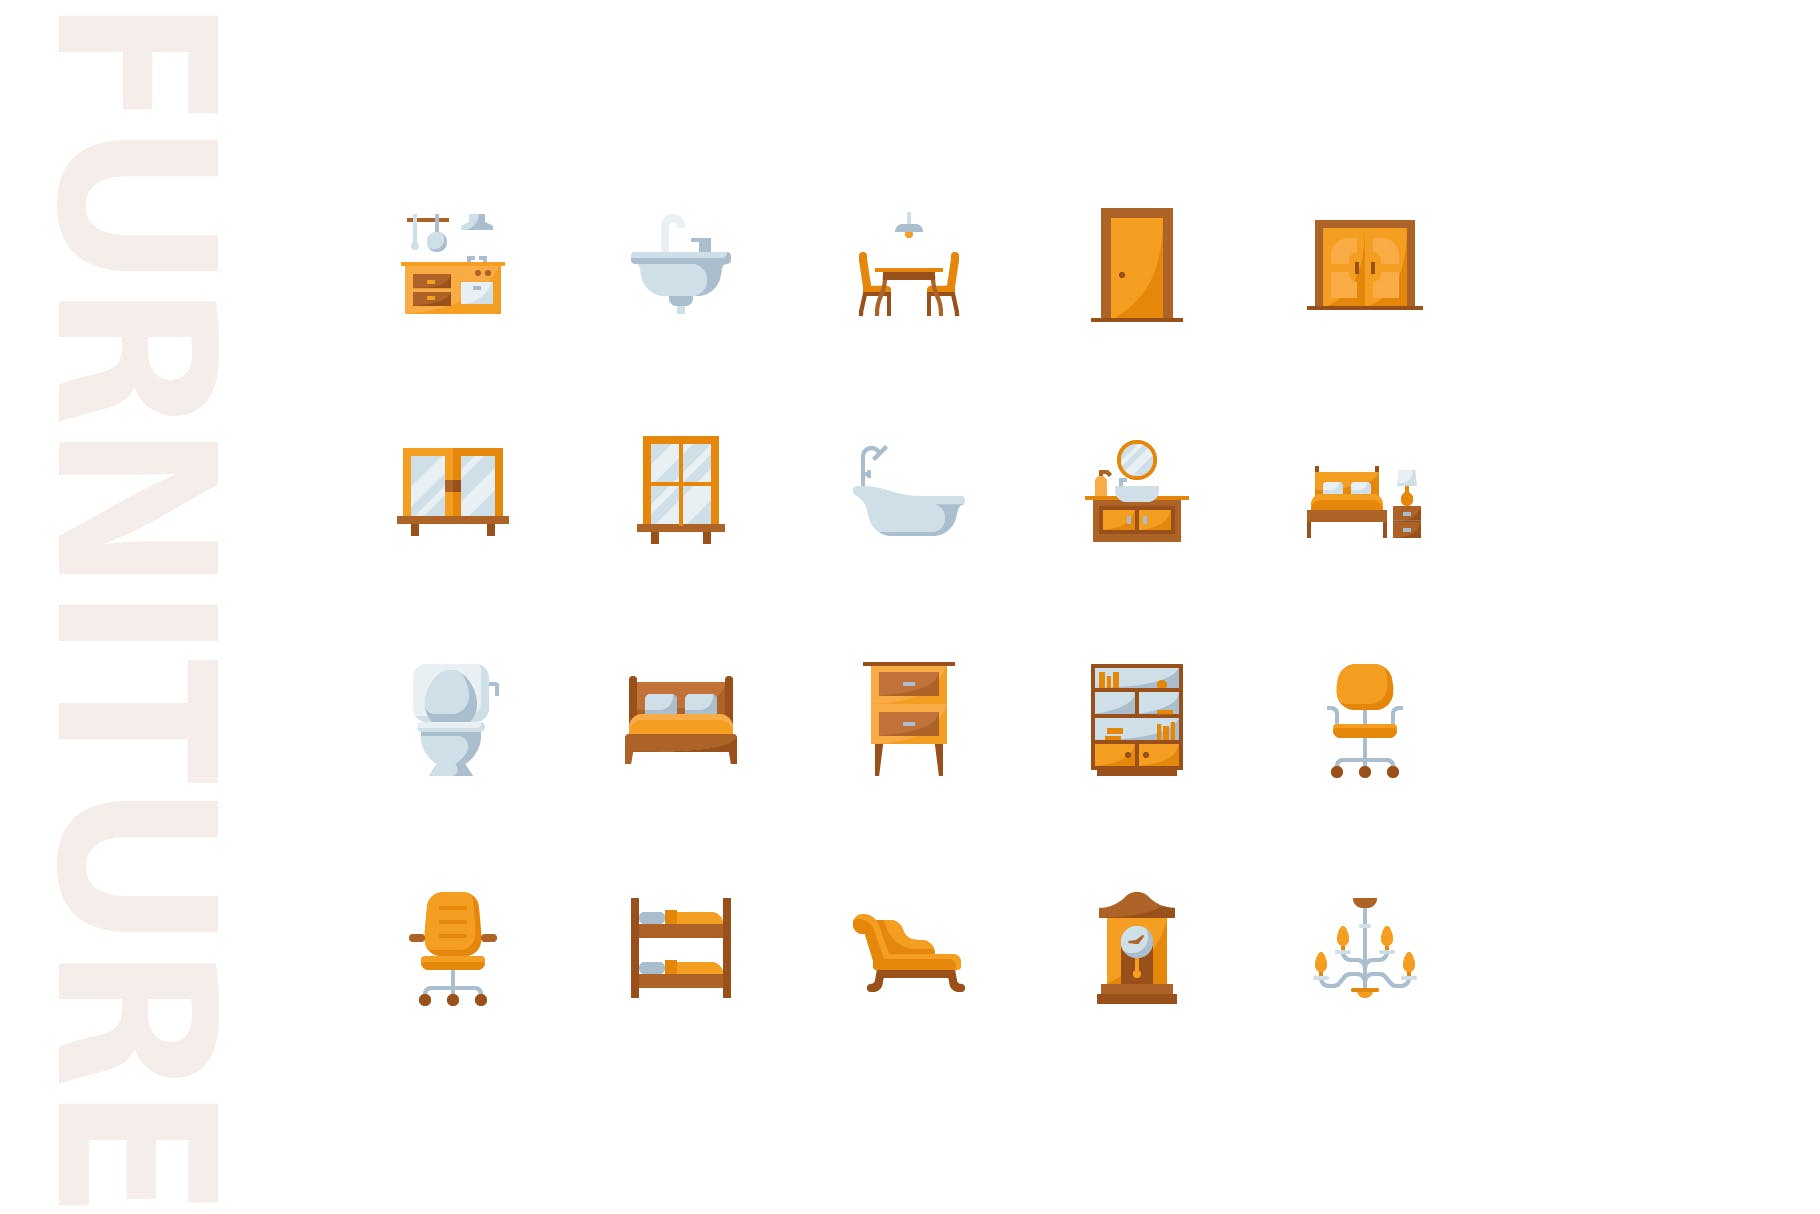 20枚家具主题扁平设计风格矢量蚂蚁素材精选图标v1 Furniture Flat Part 1插图(3)